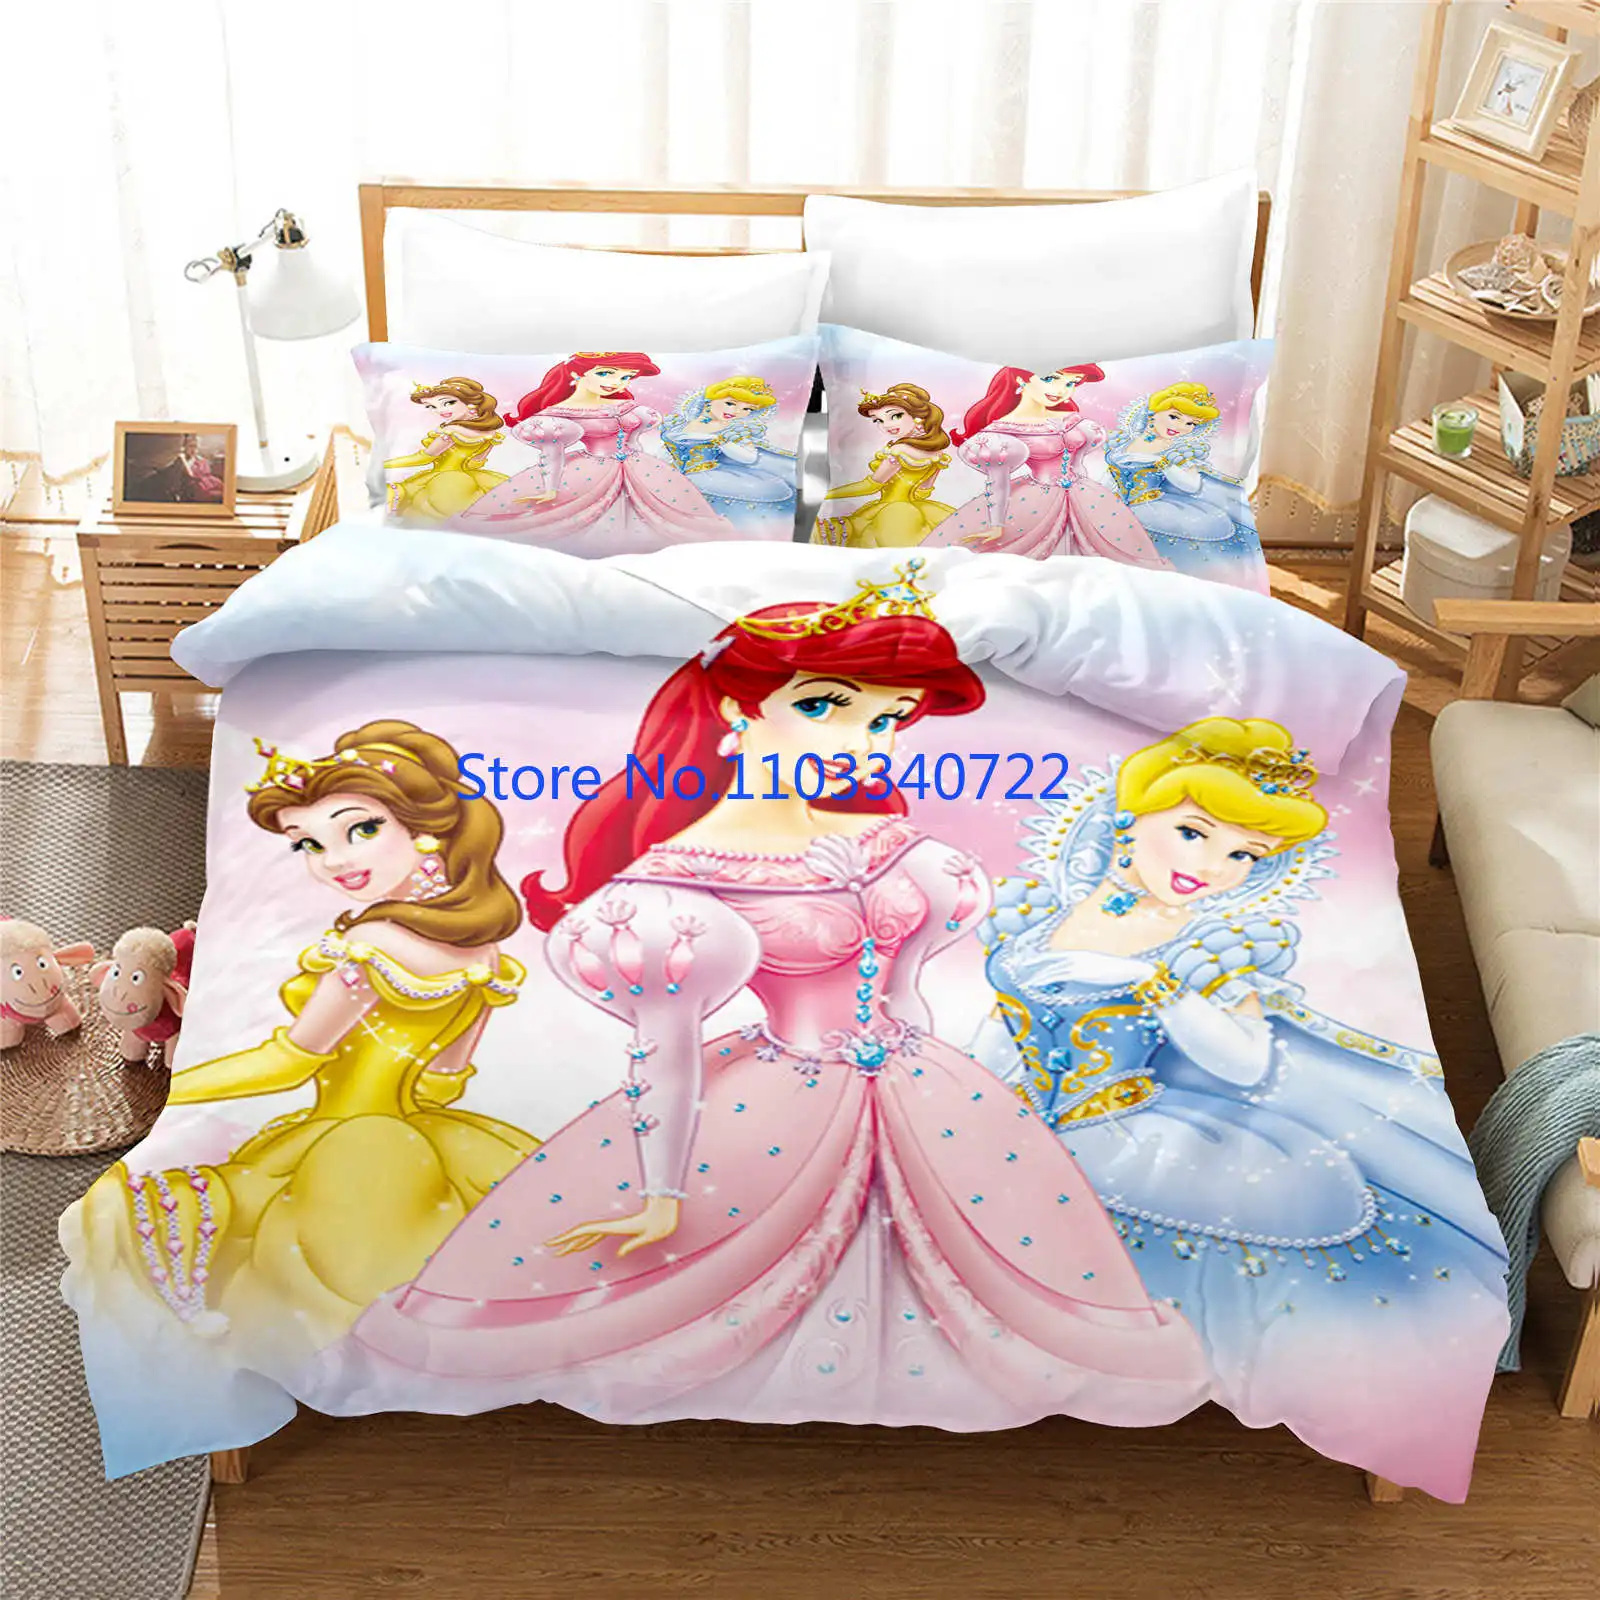 

Anime Princess Ariel Belle Kids Duvet Cover Set 3D Print Comforter Cover Bedclothes for Boy Girl Bedding Sets Bedroom Decor